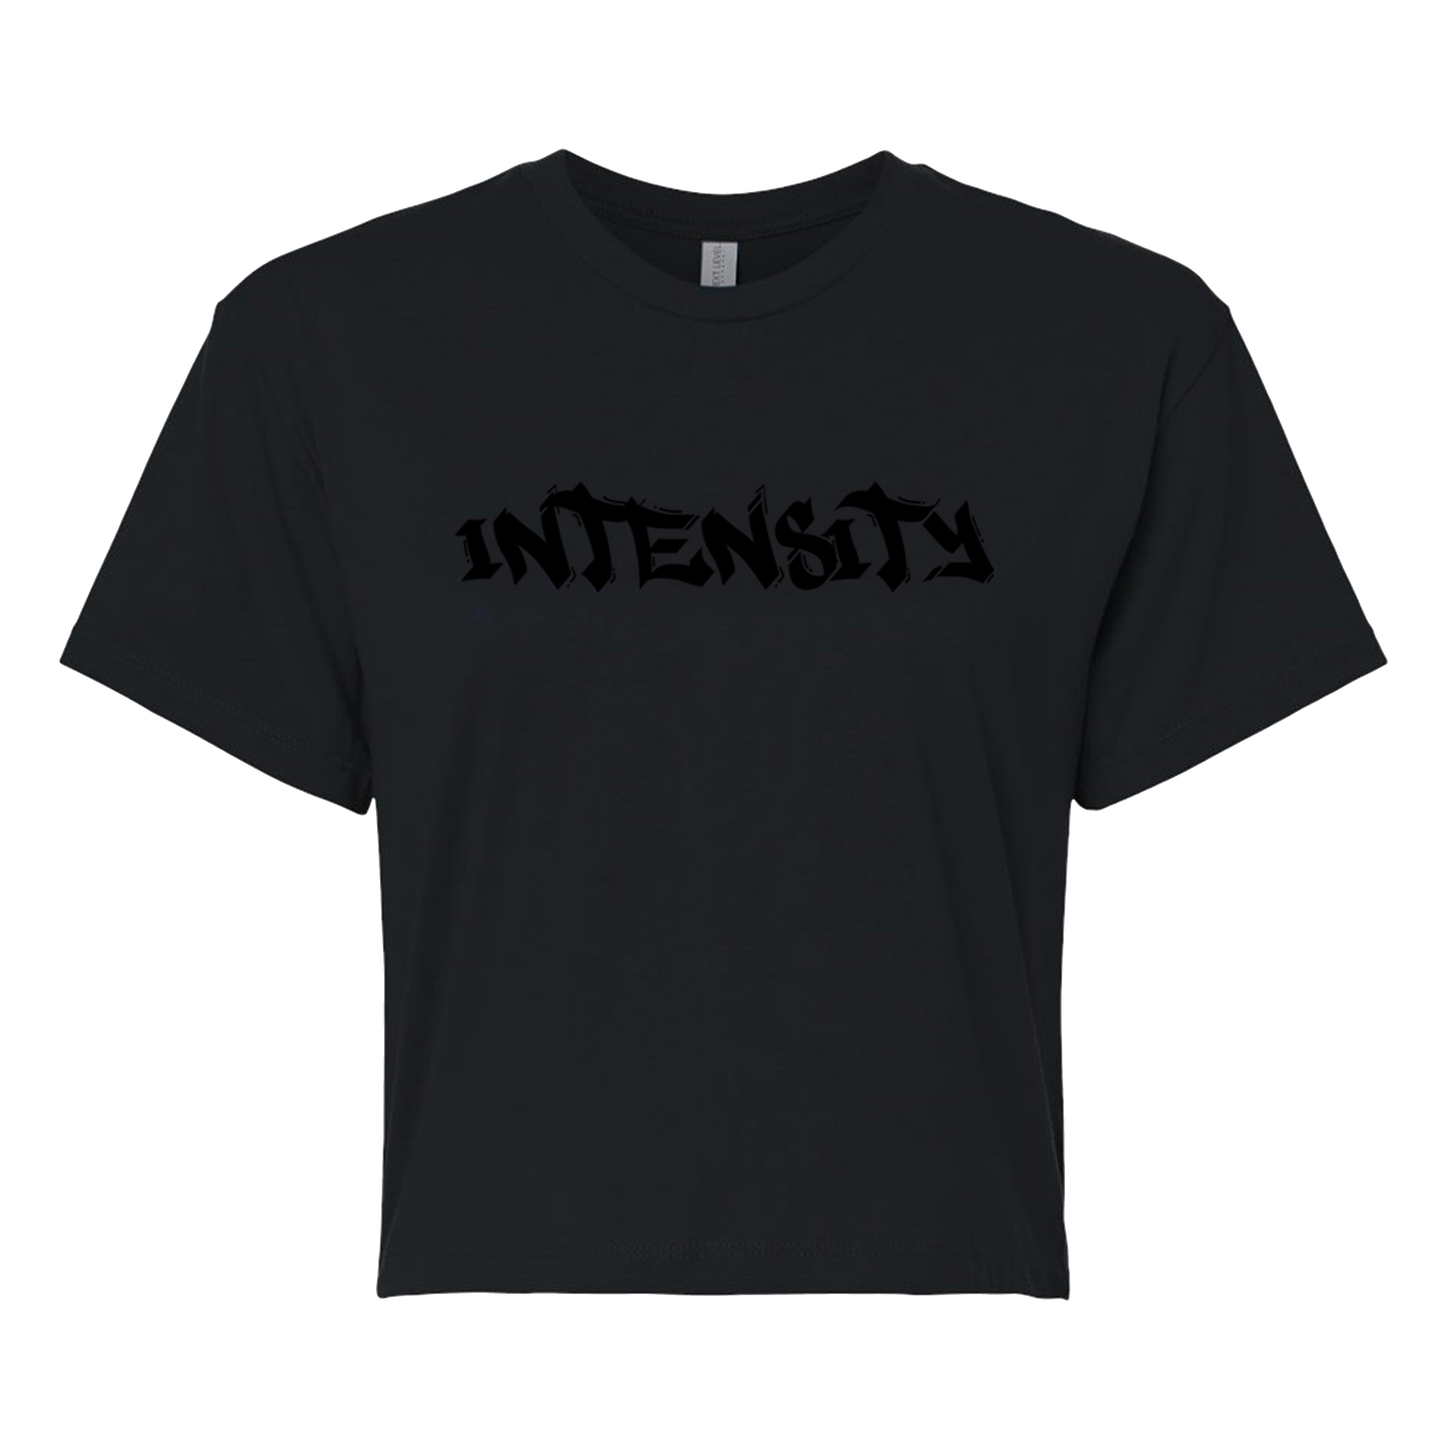 Women's "INTENSITY" Solid Black Crop Top T-Shirt